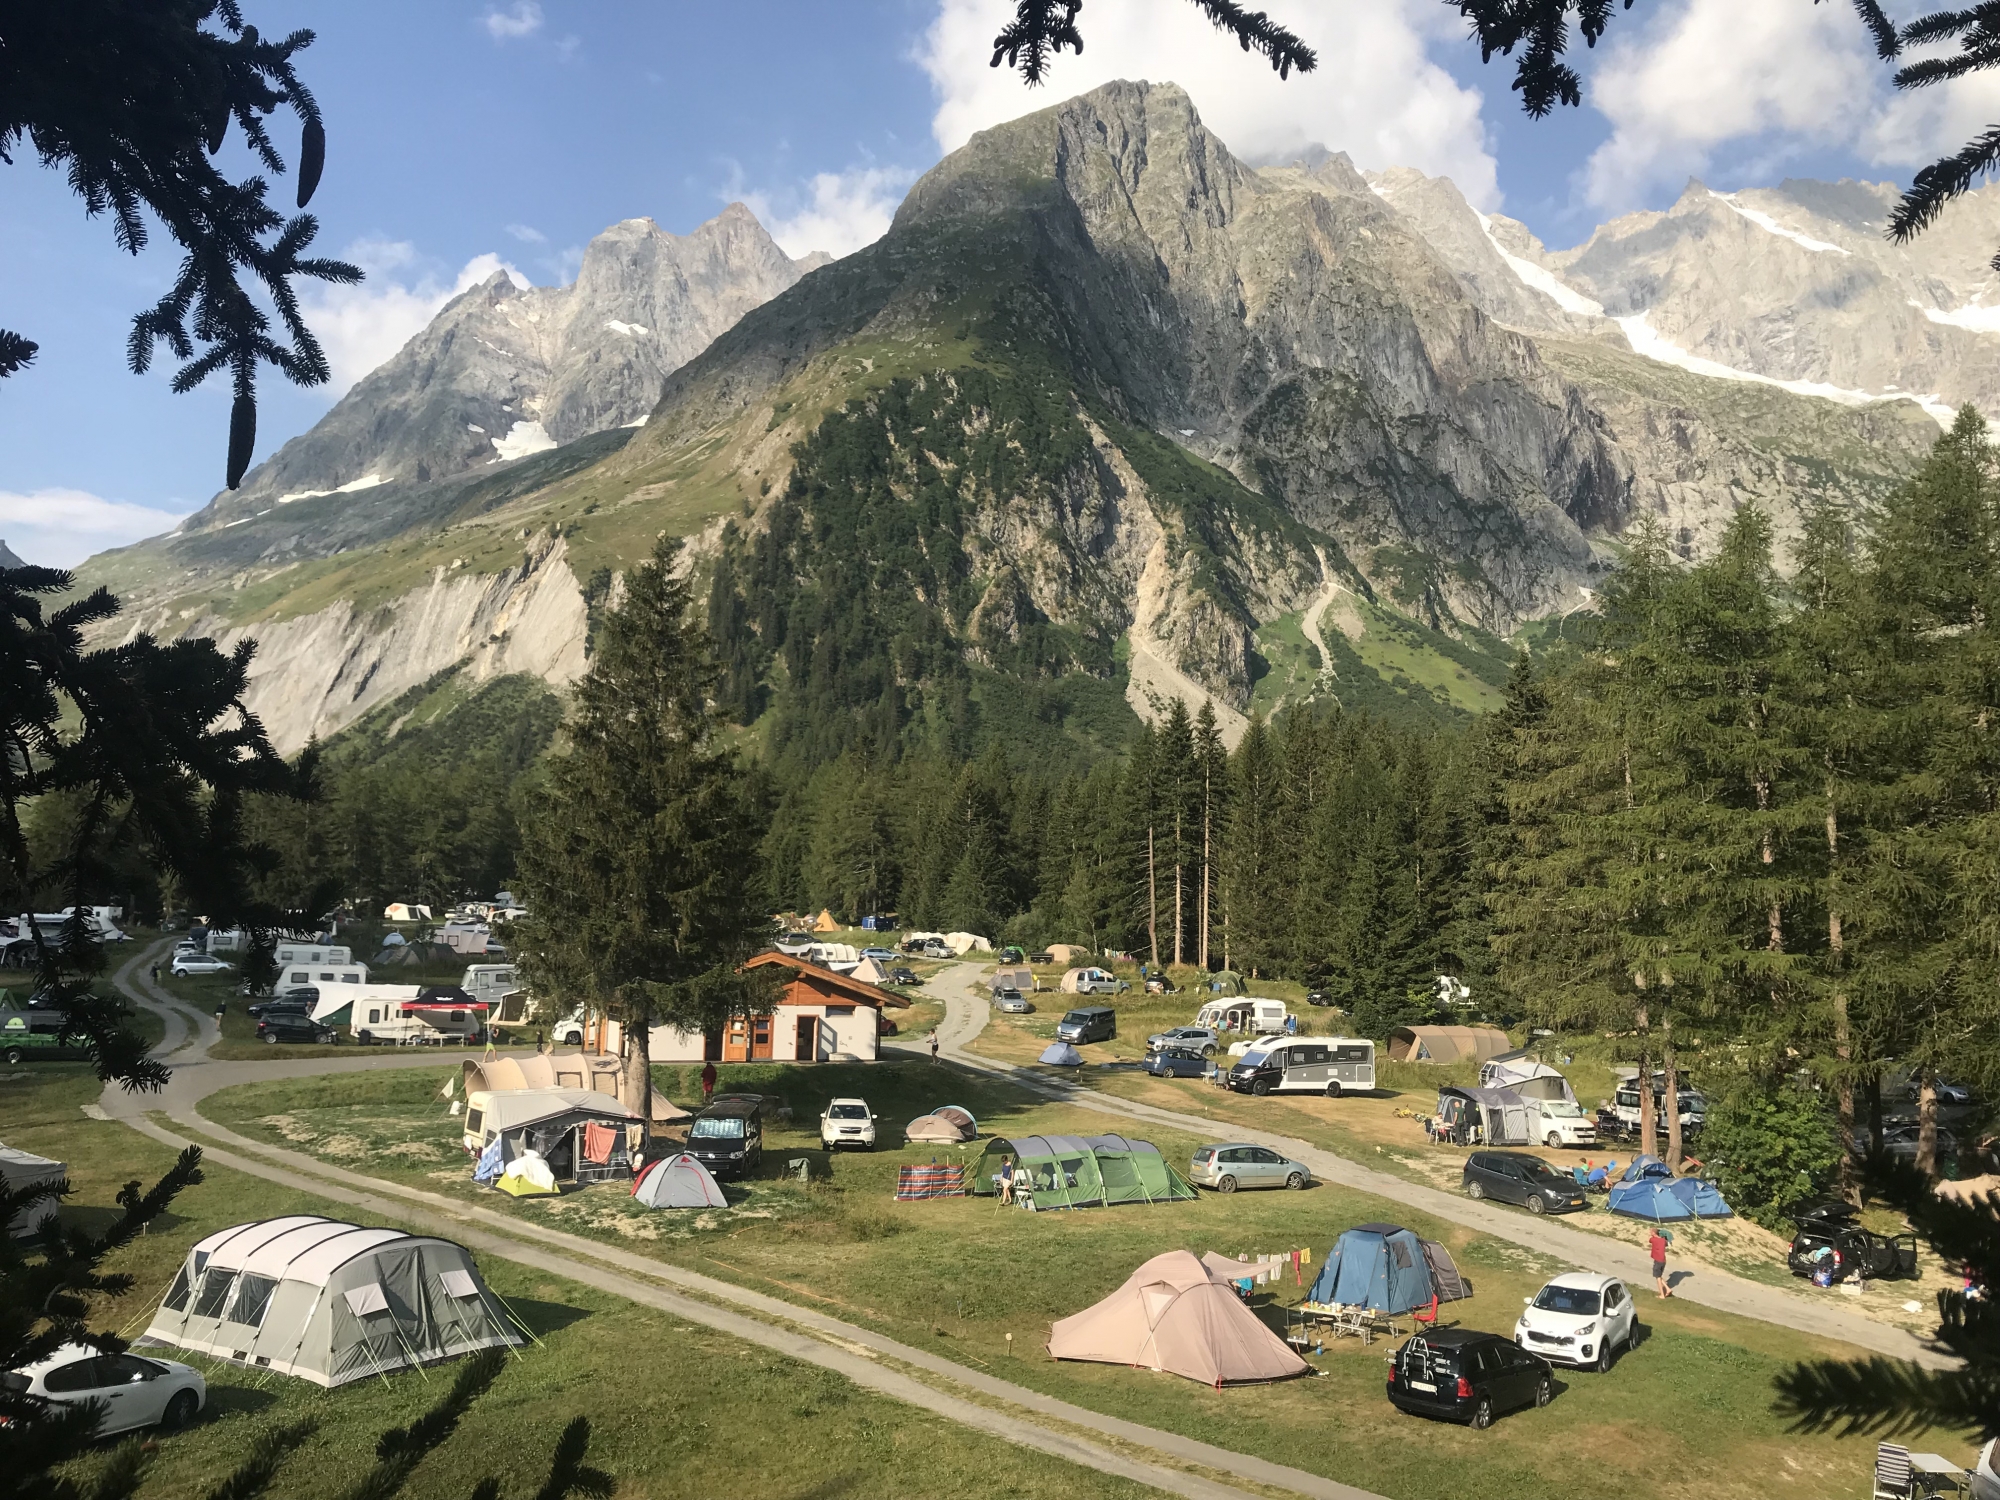 Les jours de grosse affluence, le camping peut accueillir jusqu'à 1000 personnes.